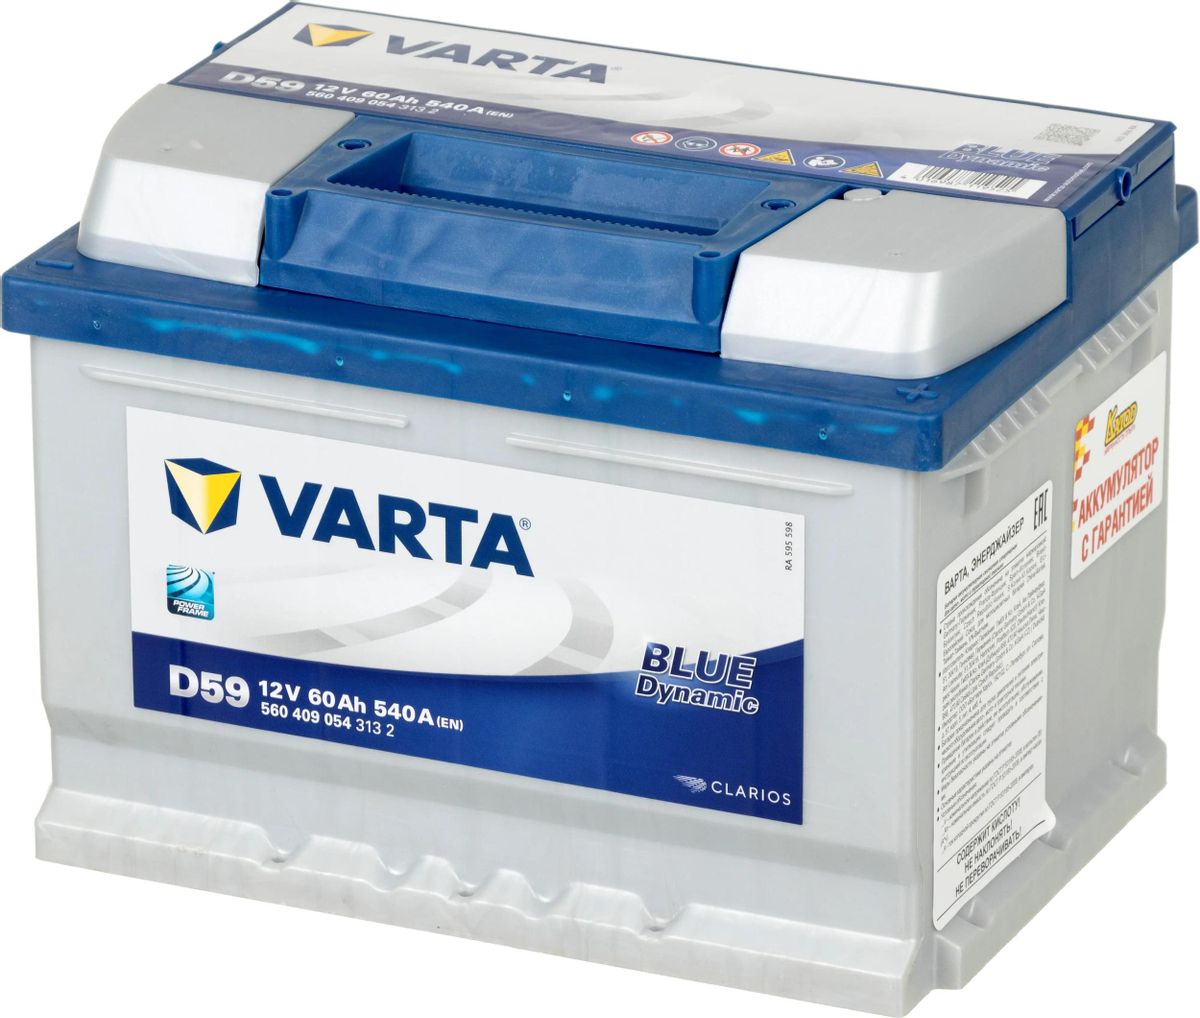 Аккумулятор автомобильный VARTA Blue Dynamic 60Ач 540A [560 409 054 d59] –  купить в Ситилинк